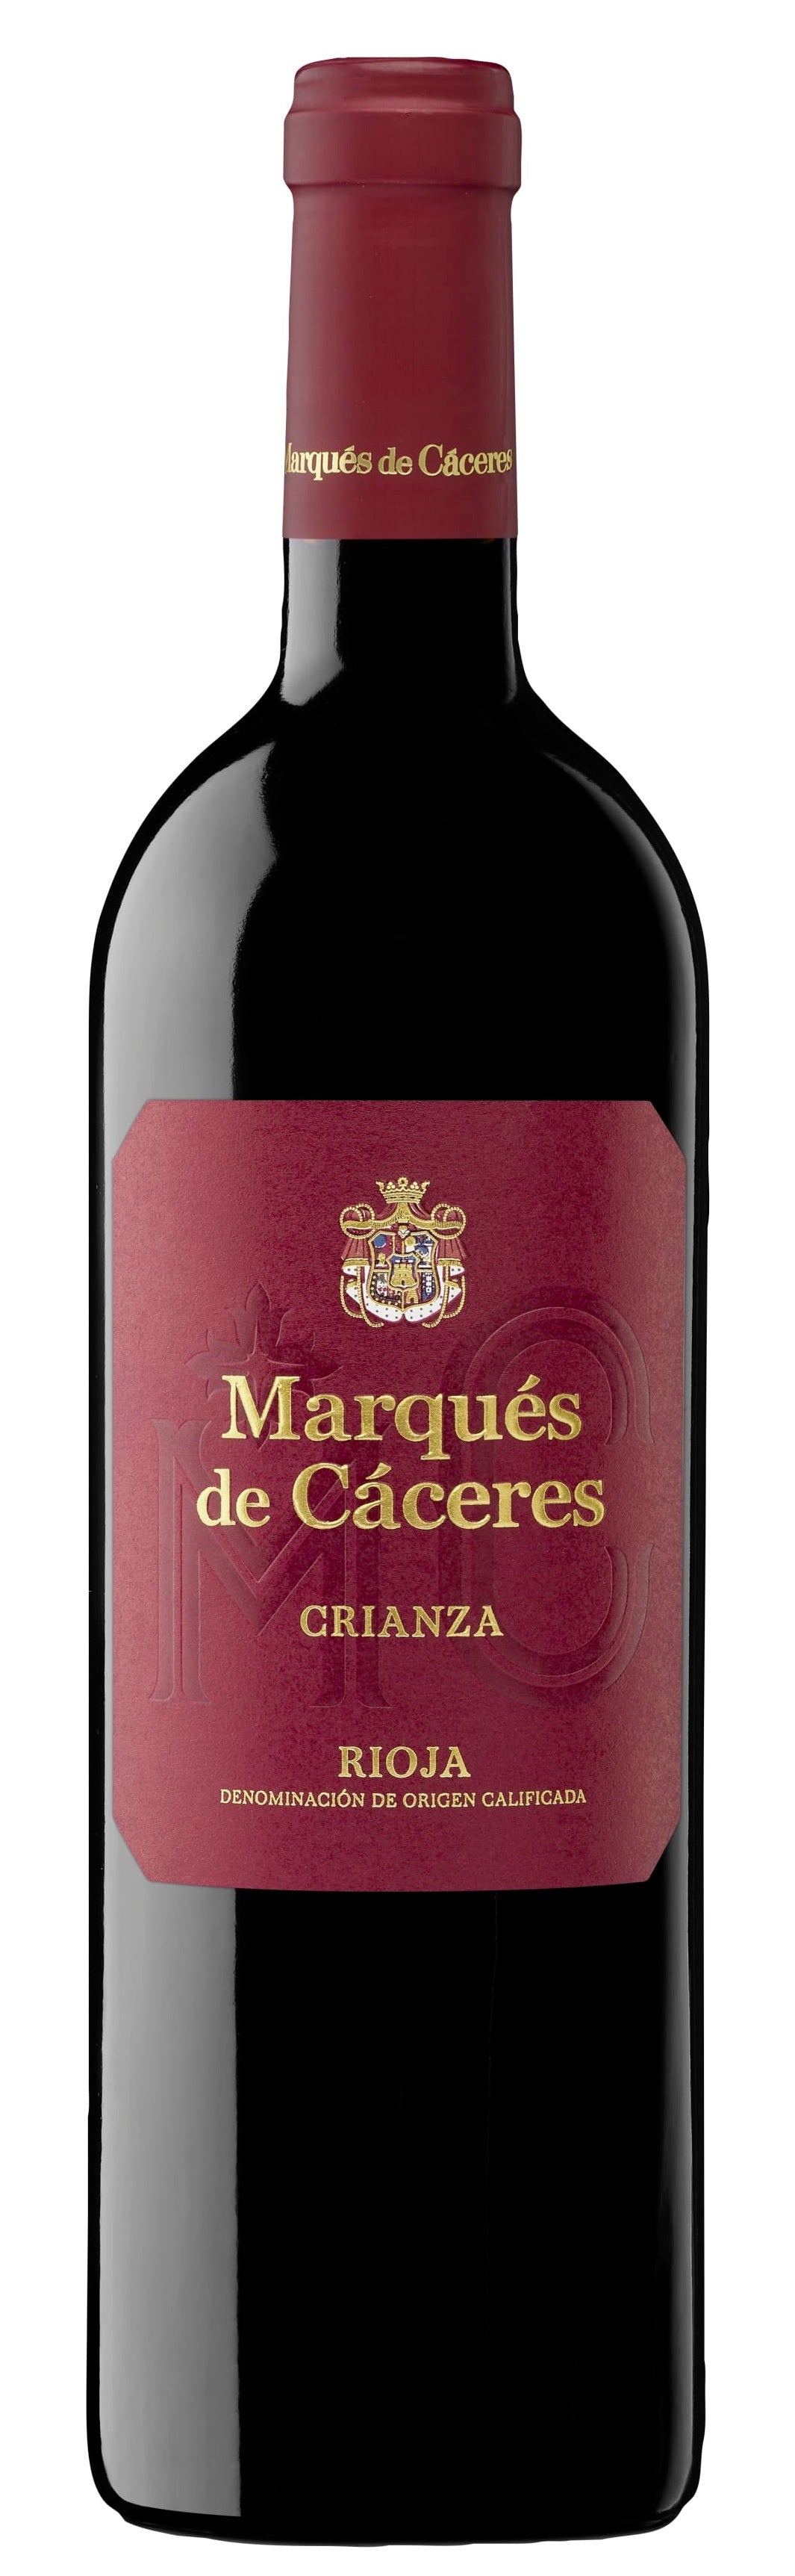 Marques de Caceres Rioja Crianza 2017